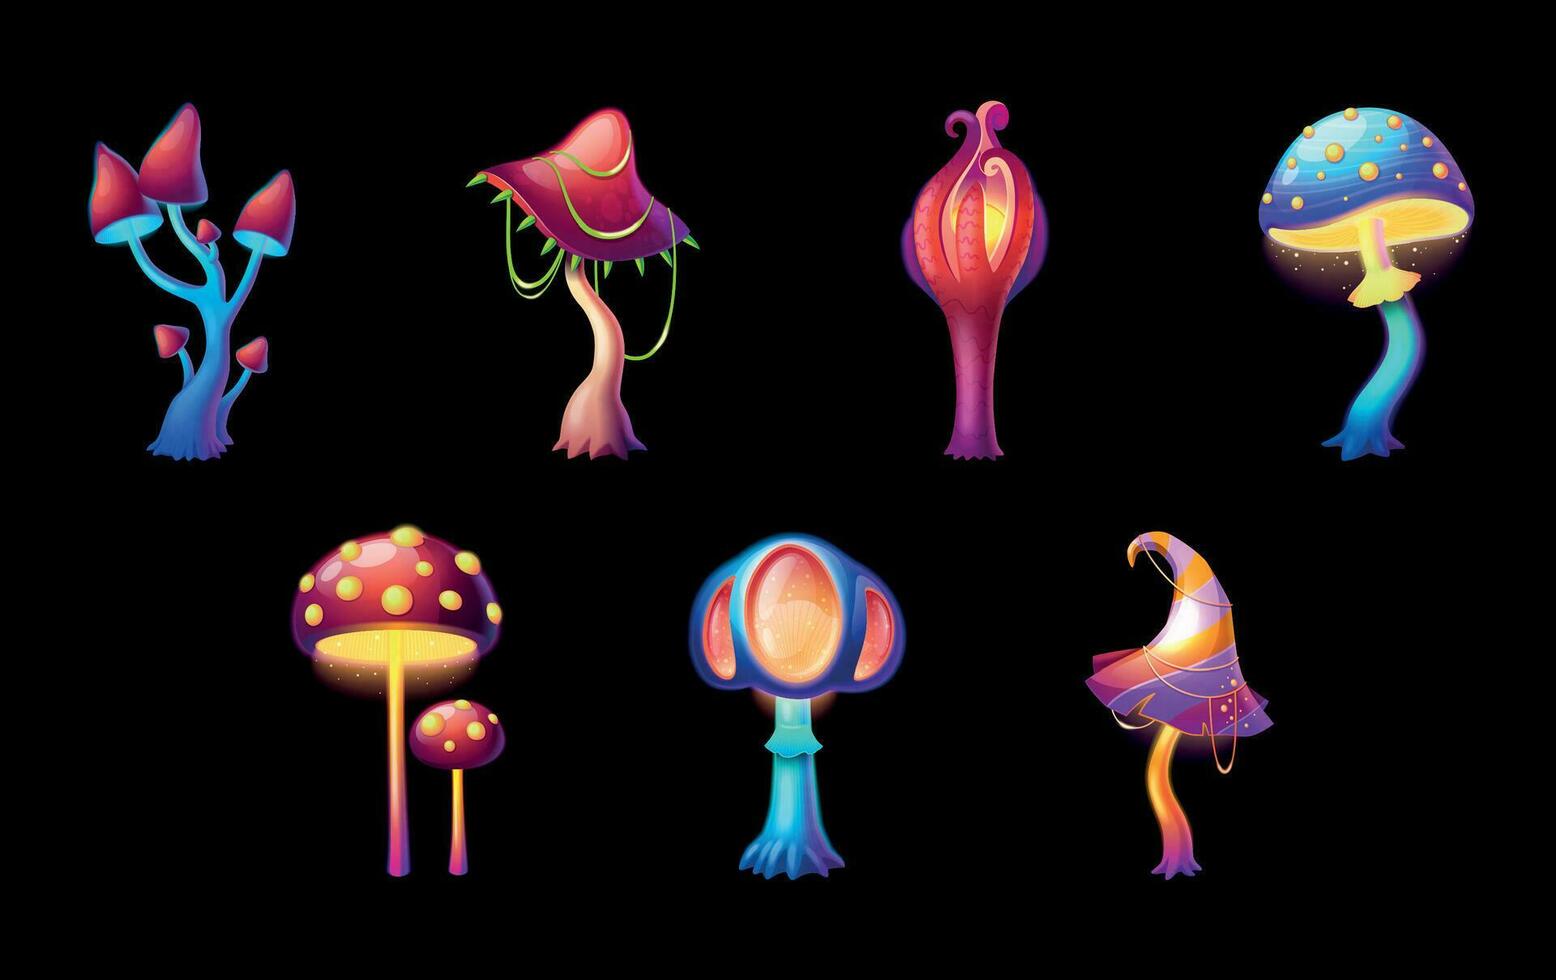 Magic Mushrooms Cartoon Set vector